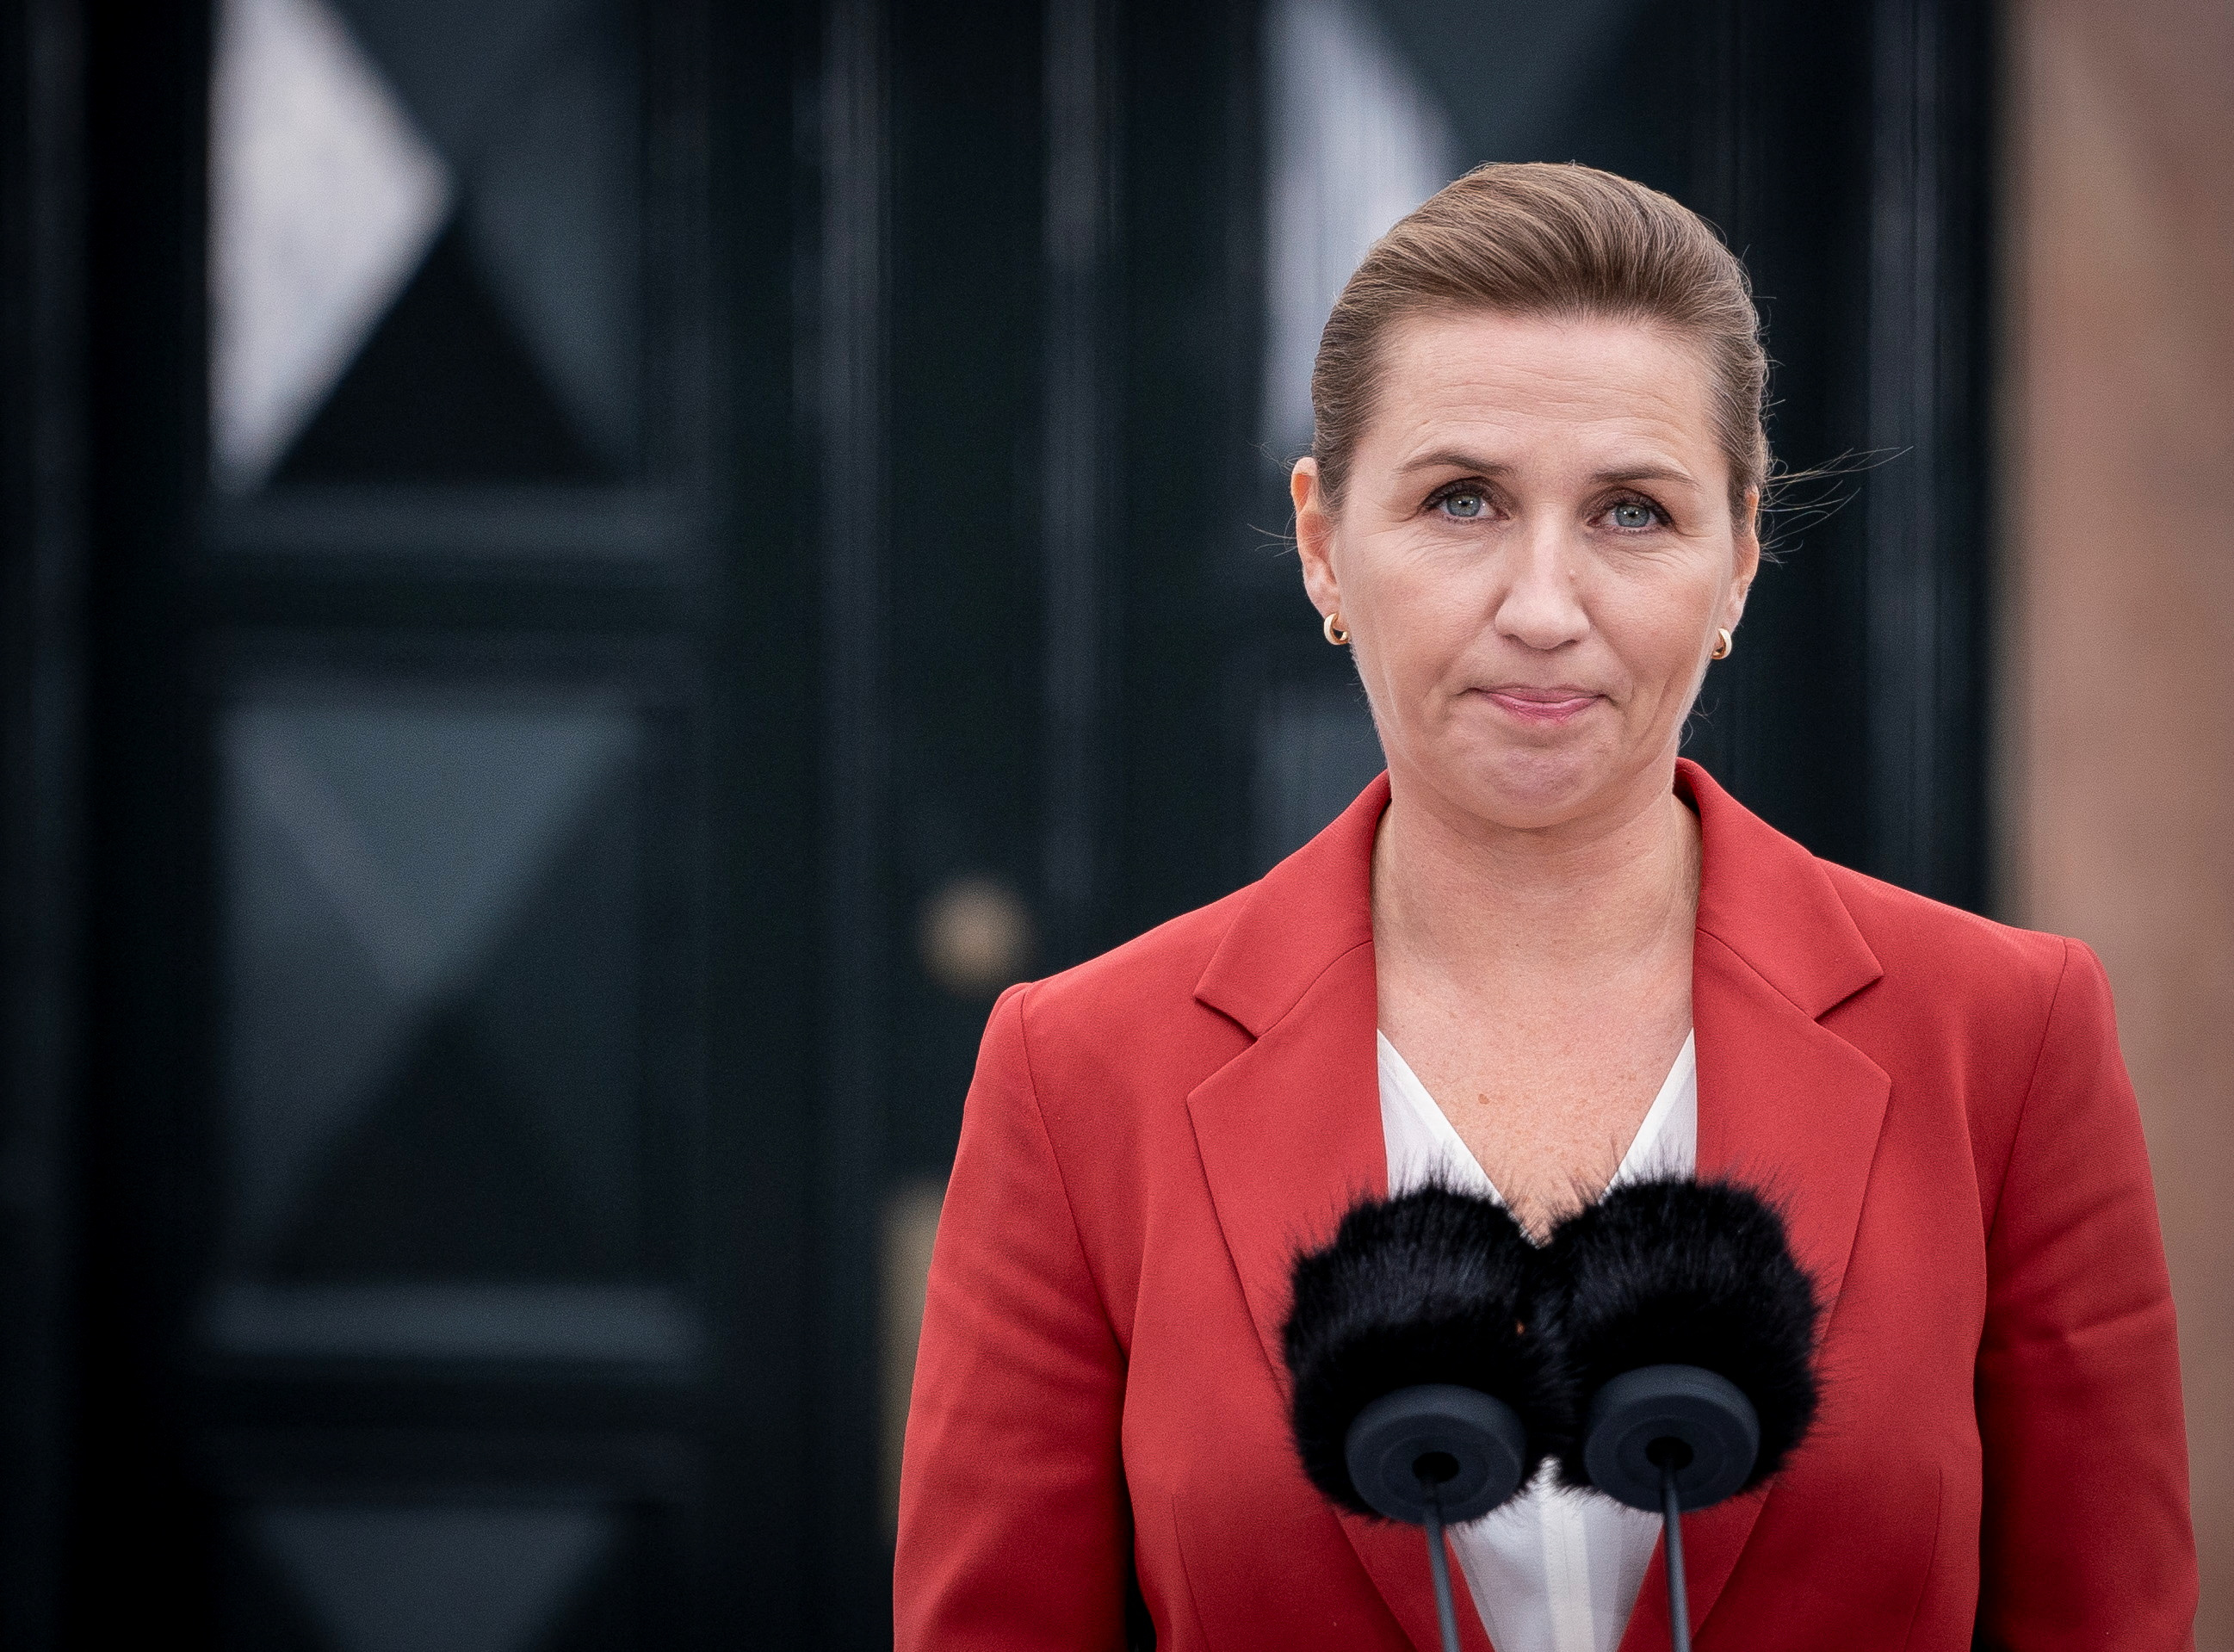 Con la primera ministra envuelta en una polémica por el sacrificio de millones de visones, Dinamarca anunció elección general anticipada